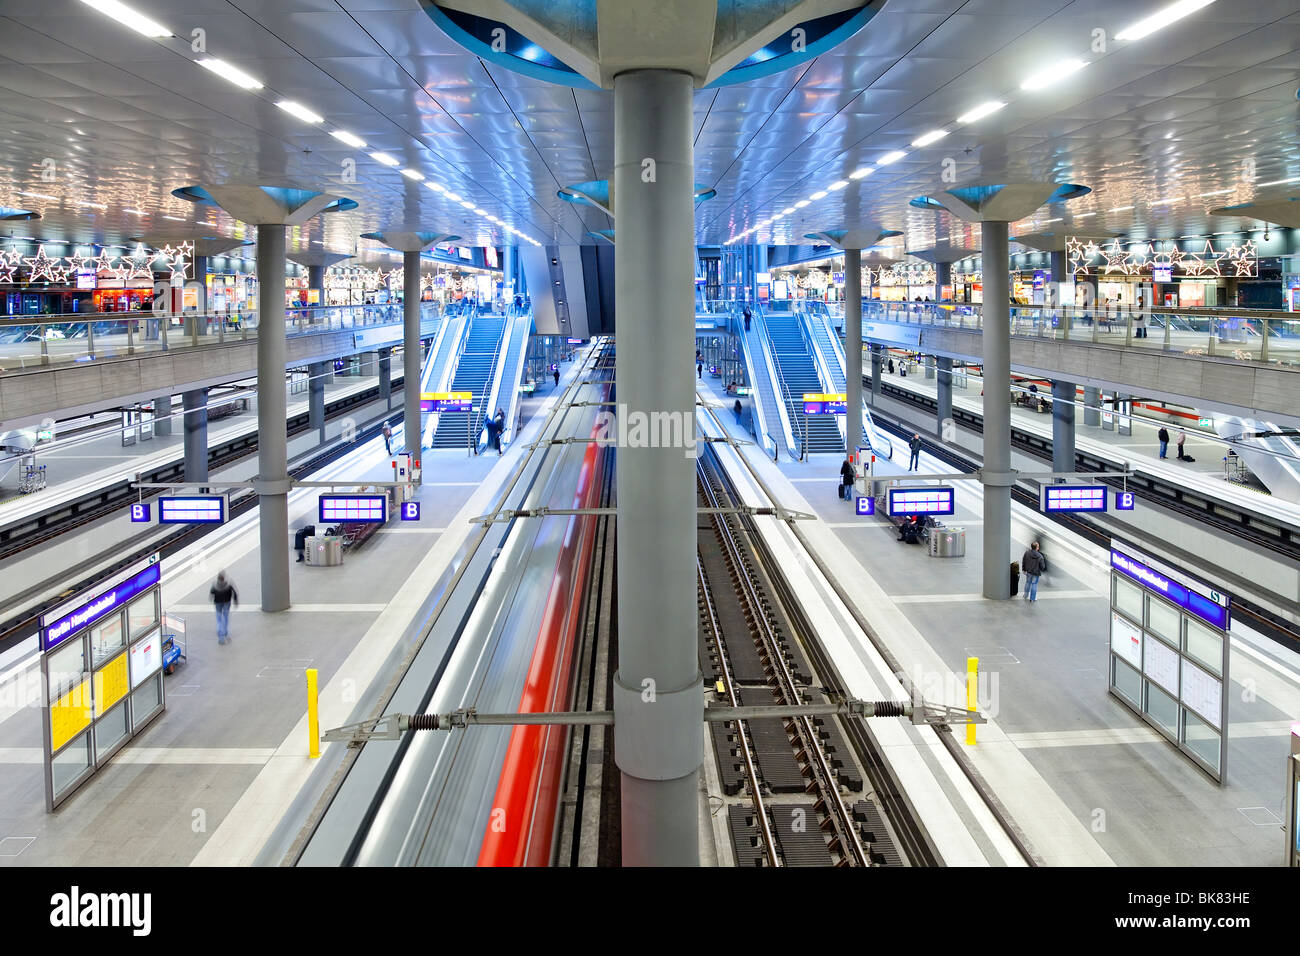 Europa, Deutschland, Berlin, neue moderne Hauptbahnhof - Zug ziehen in die Plattform Stockfoto